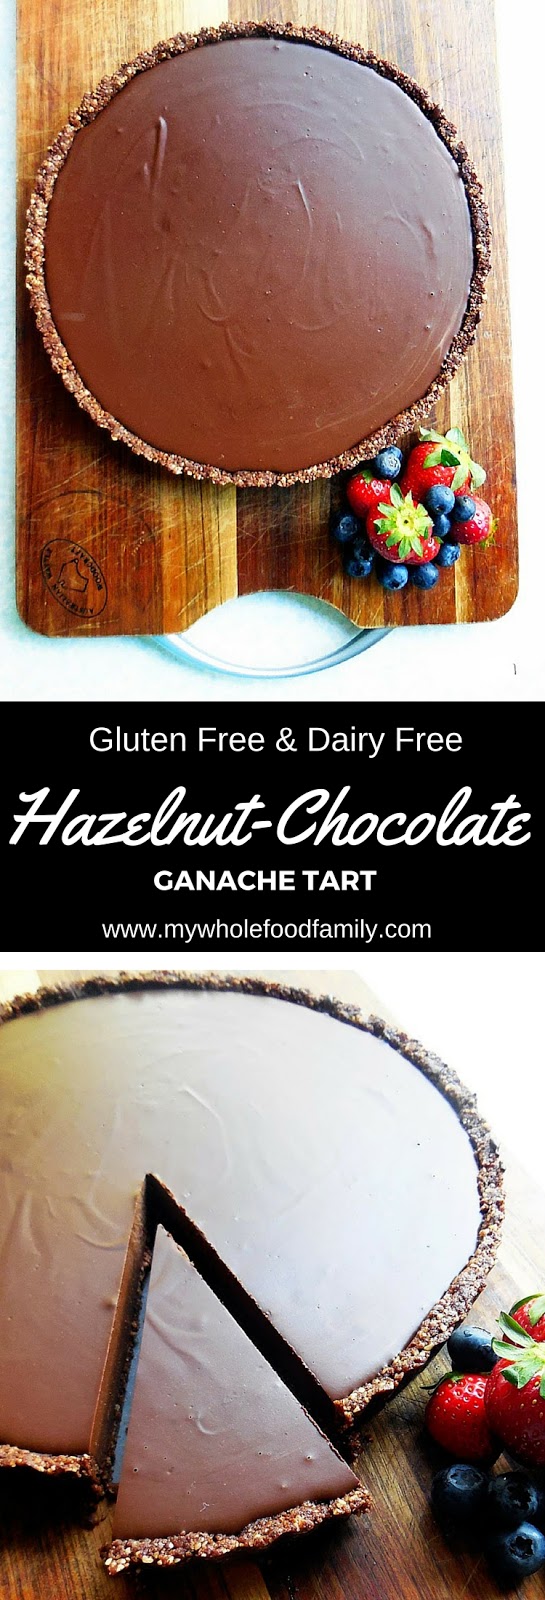 Hazelnut Chocolate Ganache Tart - gluten free and dairy free - from www.mywholefoodfamily.com